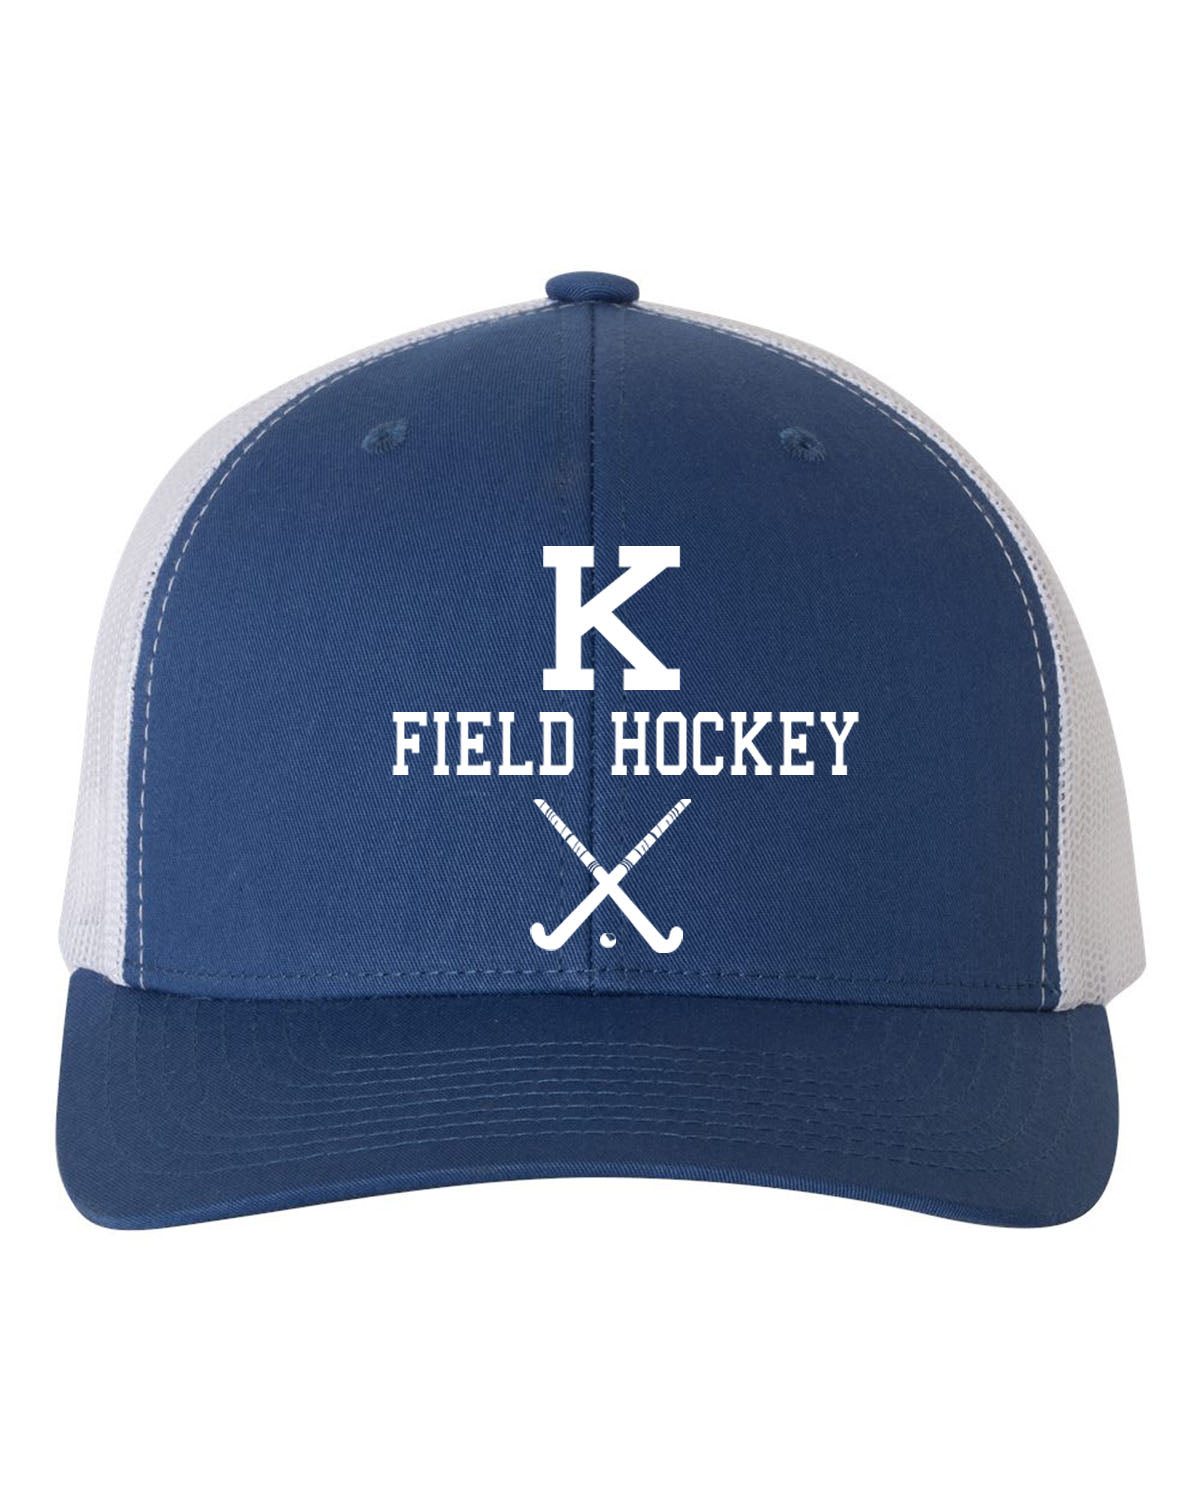 Kittatinny Jr High Field Hockey design 5 Trucker Hat